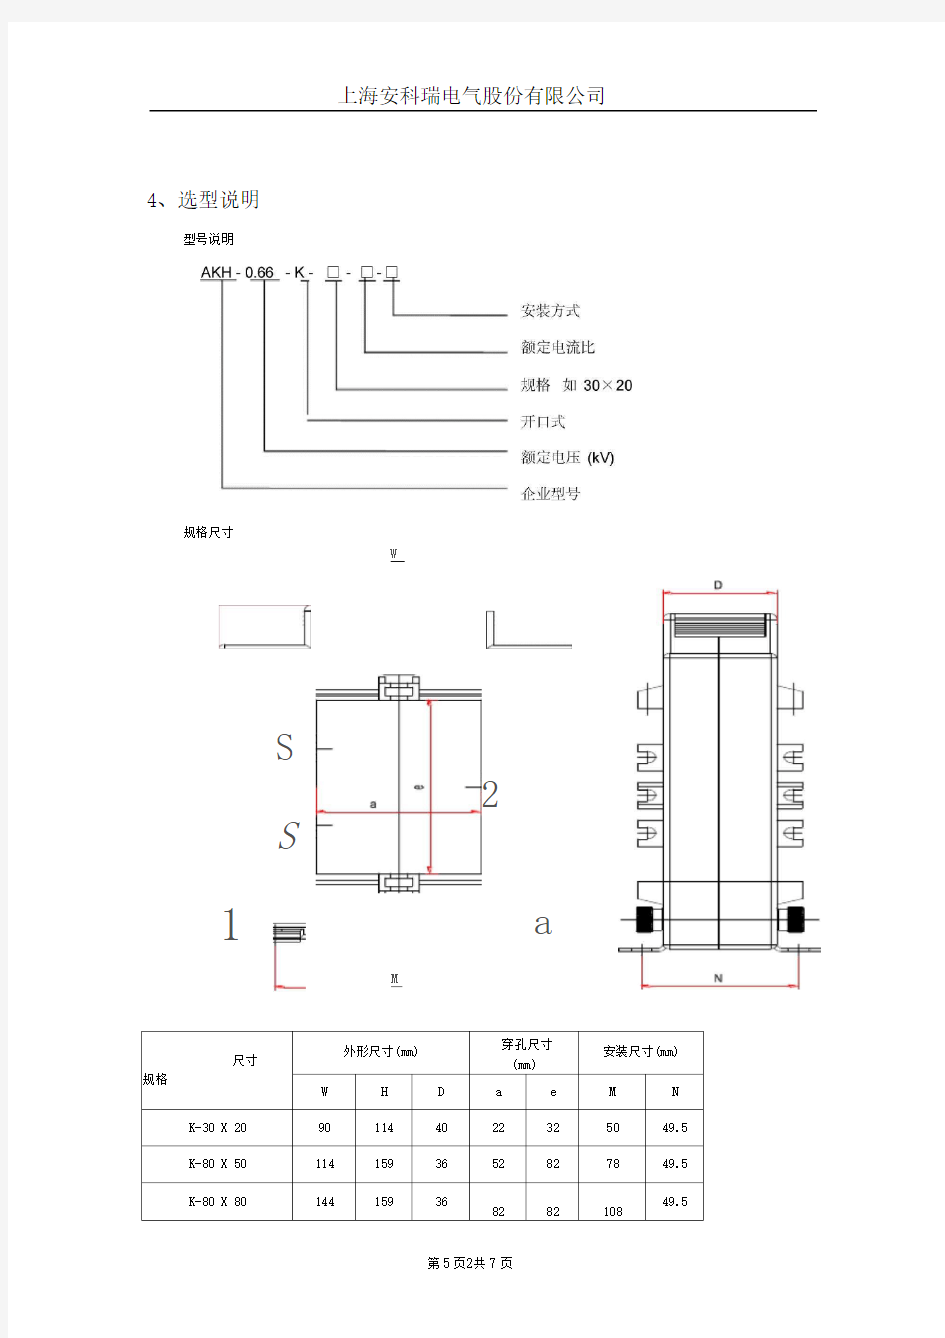 低压开口式电流互感器品种及选型方法(安科瑞王春华)